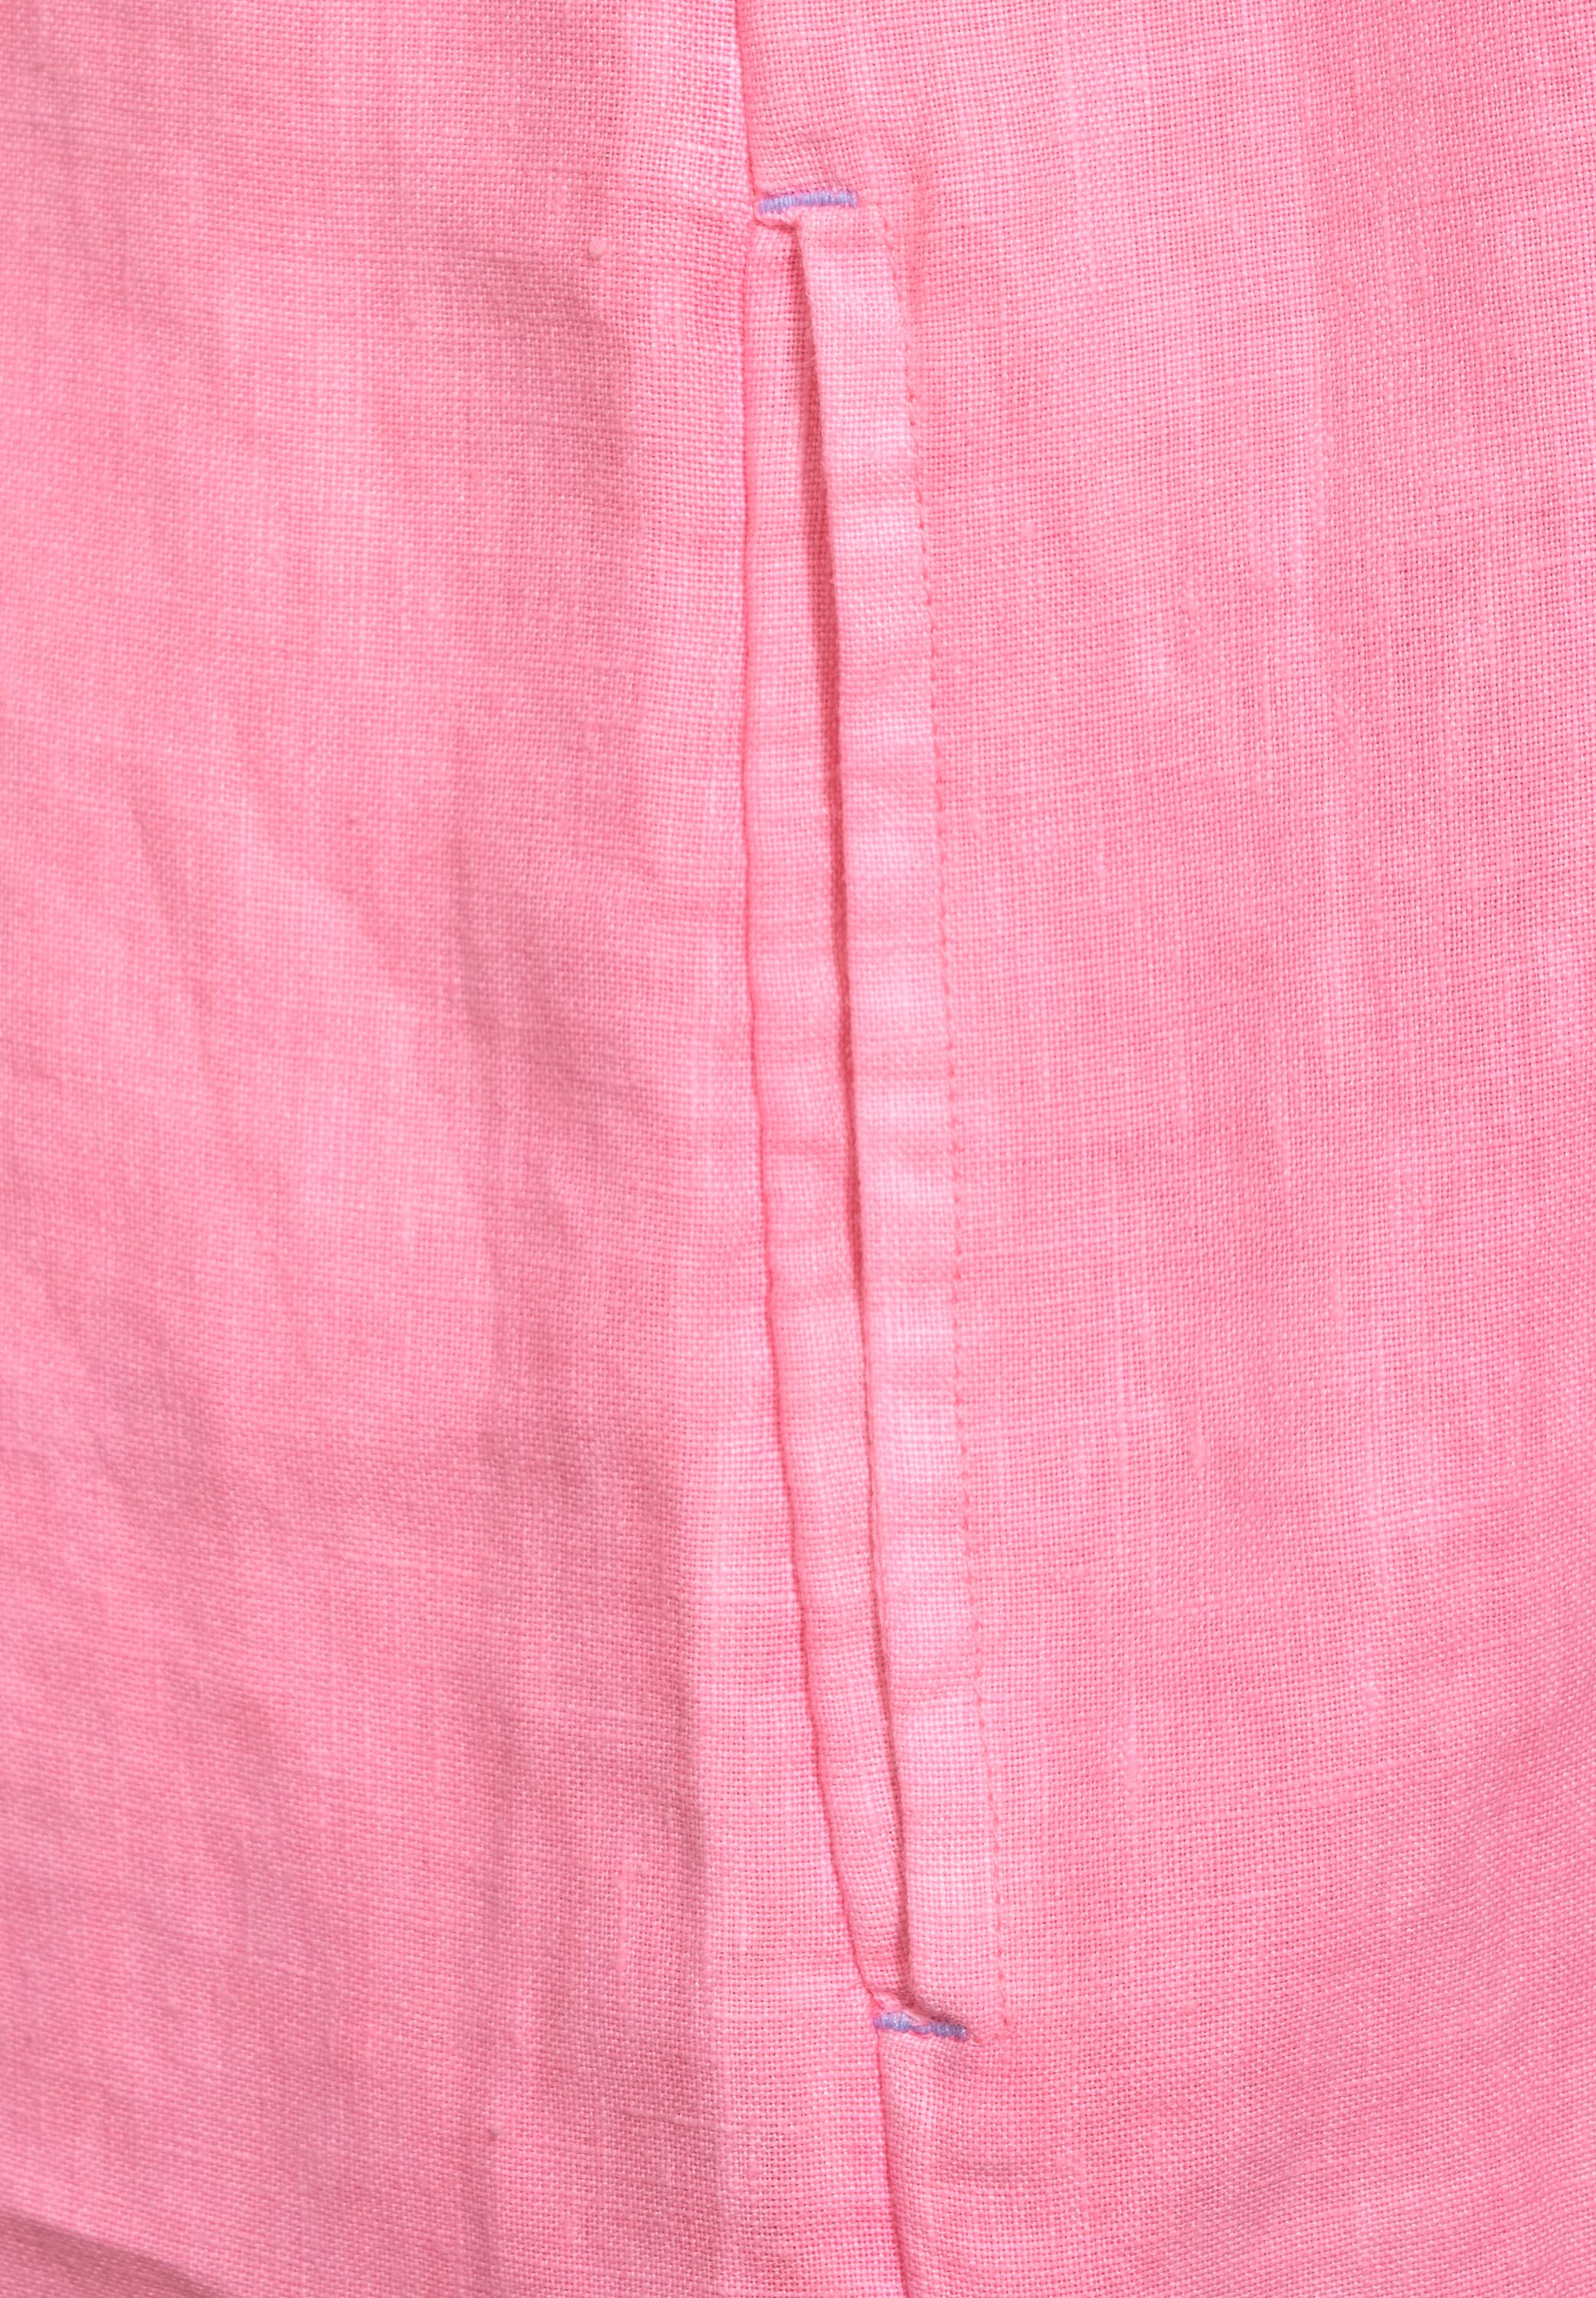 pink | | soft Unifarbe 4063039482496 in Leinen | Kleid XS neon